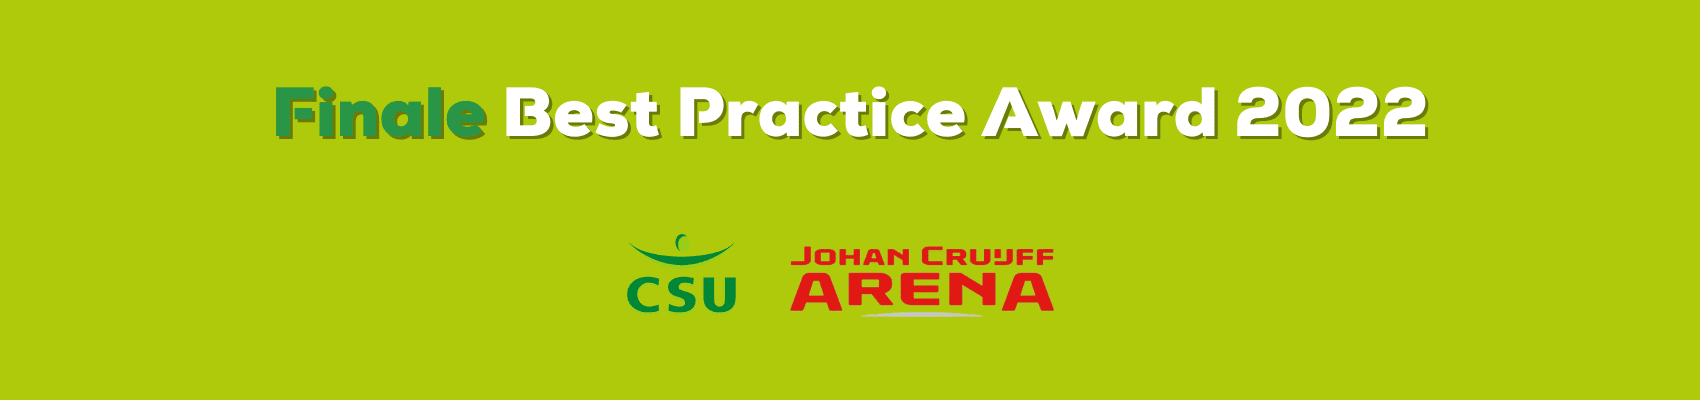 Samenwerking CSU en Johan Cruijff ArenA in de finale van de Best Practice Award 2022